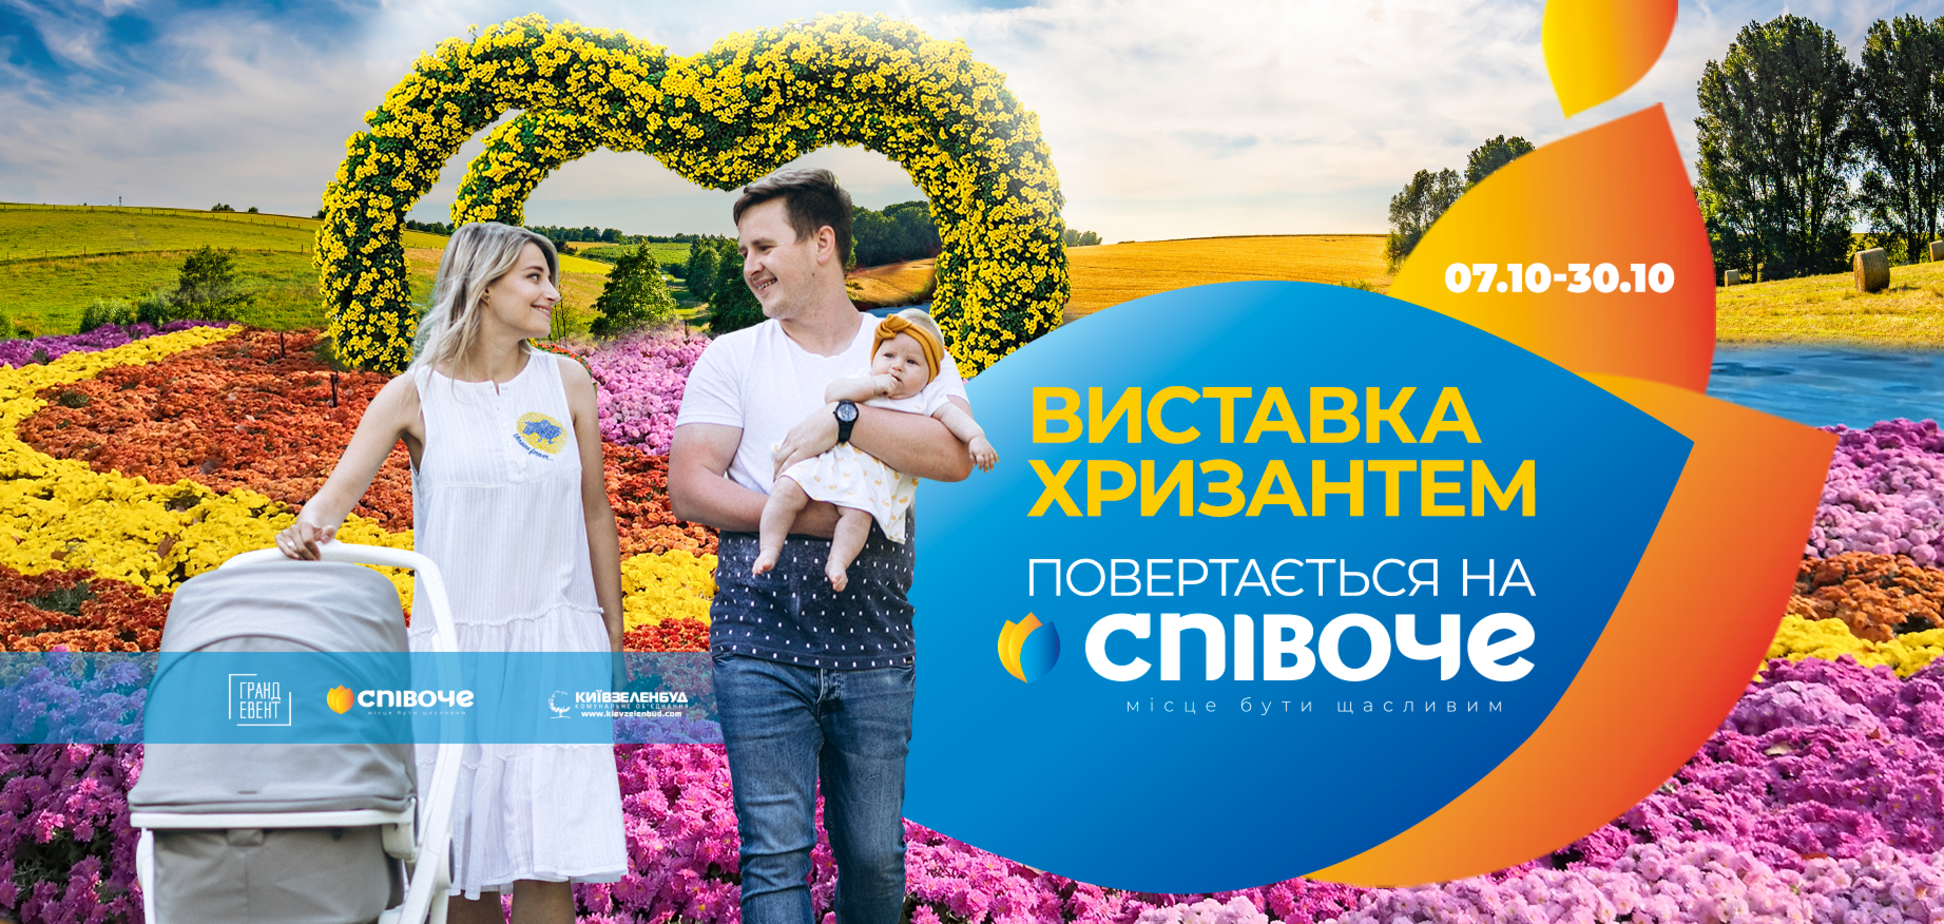 У Києві на Співочому відкриється виставка хризантем